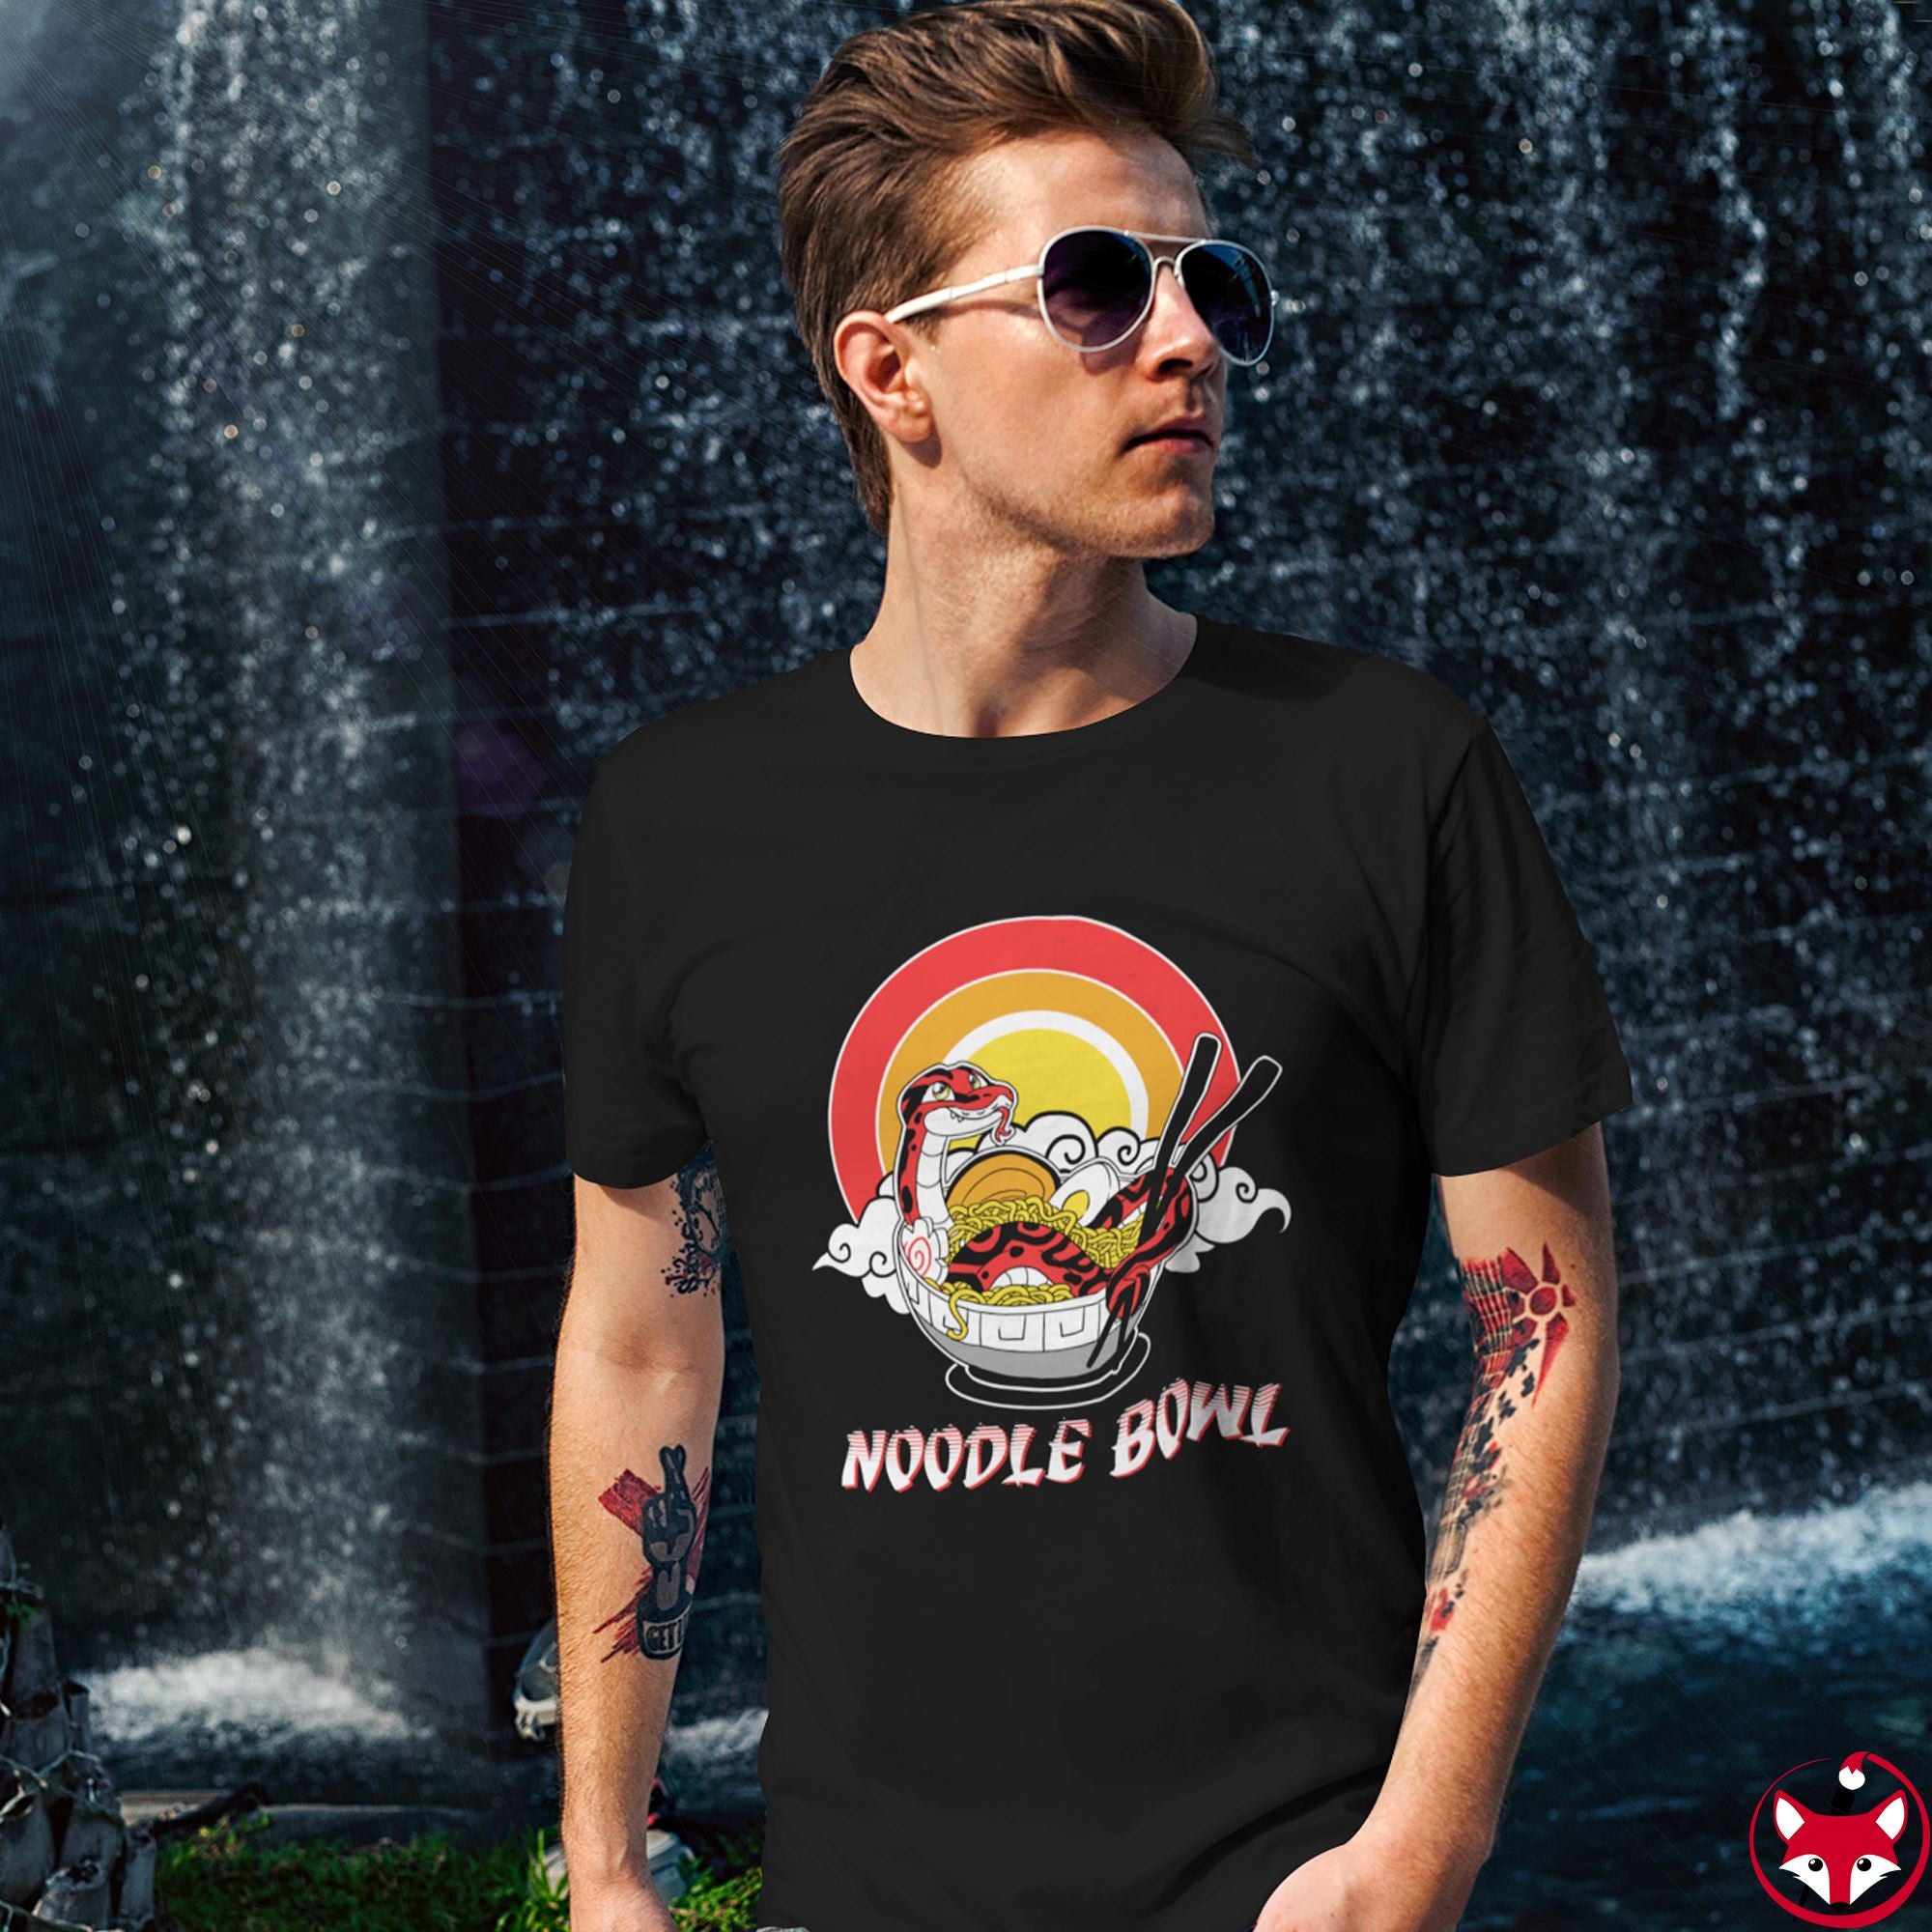 Noodle Bowl - T-Shirt T-Shirt Crunchy Crowe 